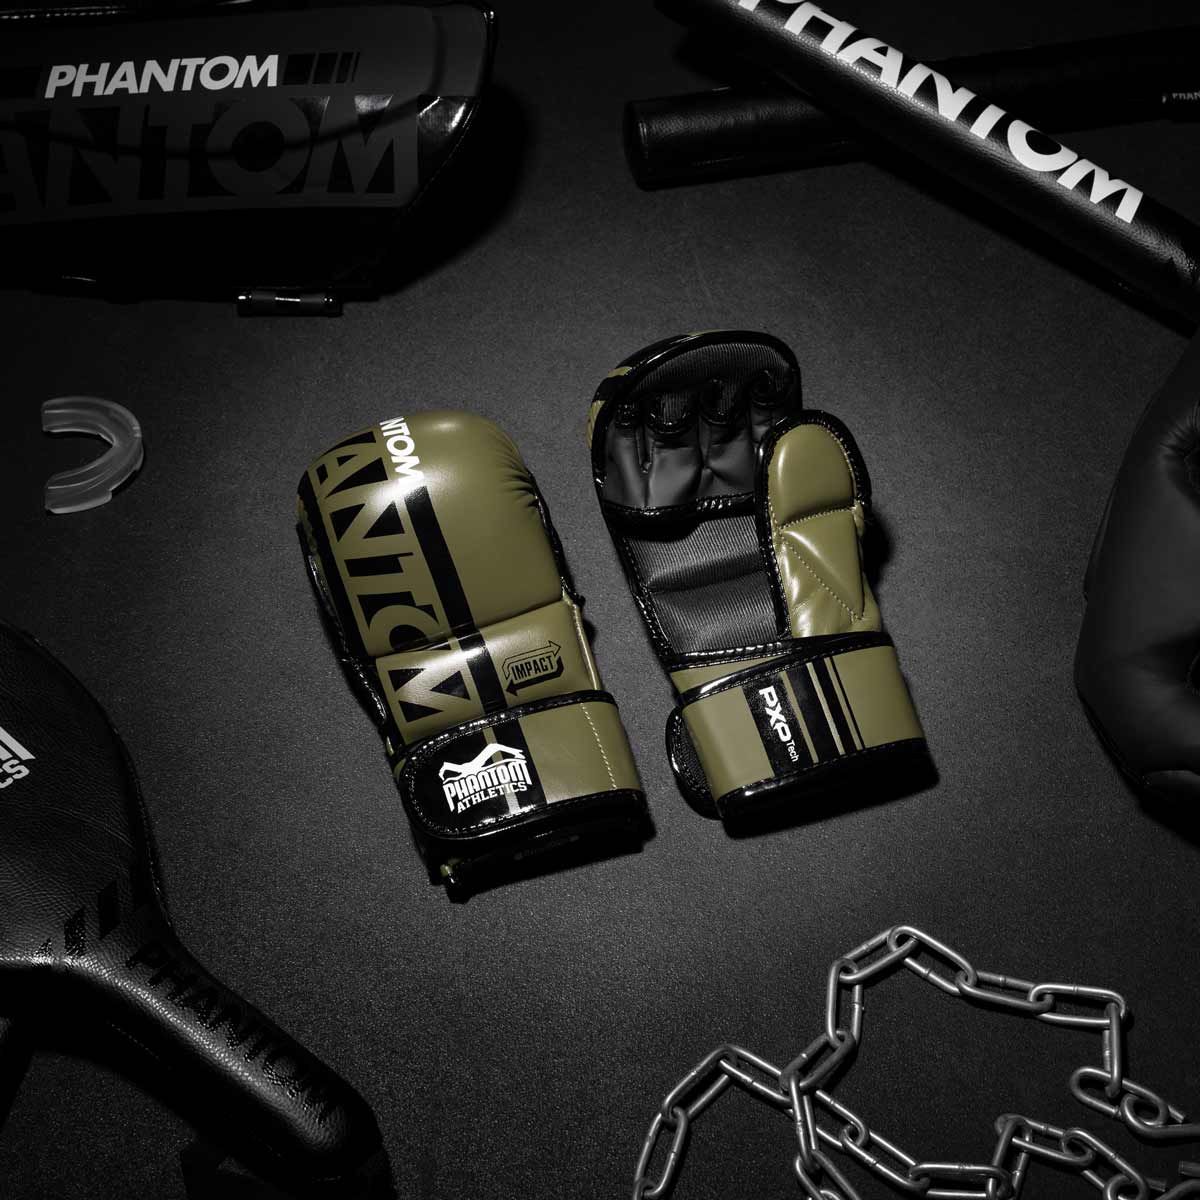 Die Phantom Apex MMA Sparrings Handschuhe in Army Grün am Gymboden mit Fight Equipment